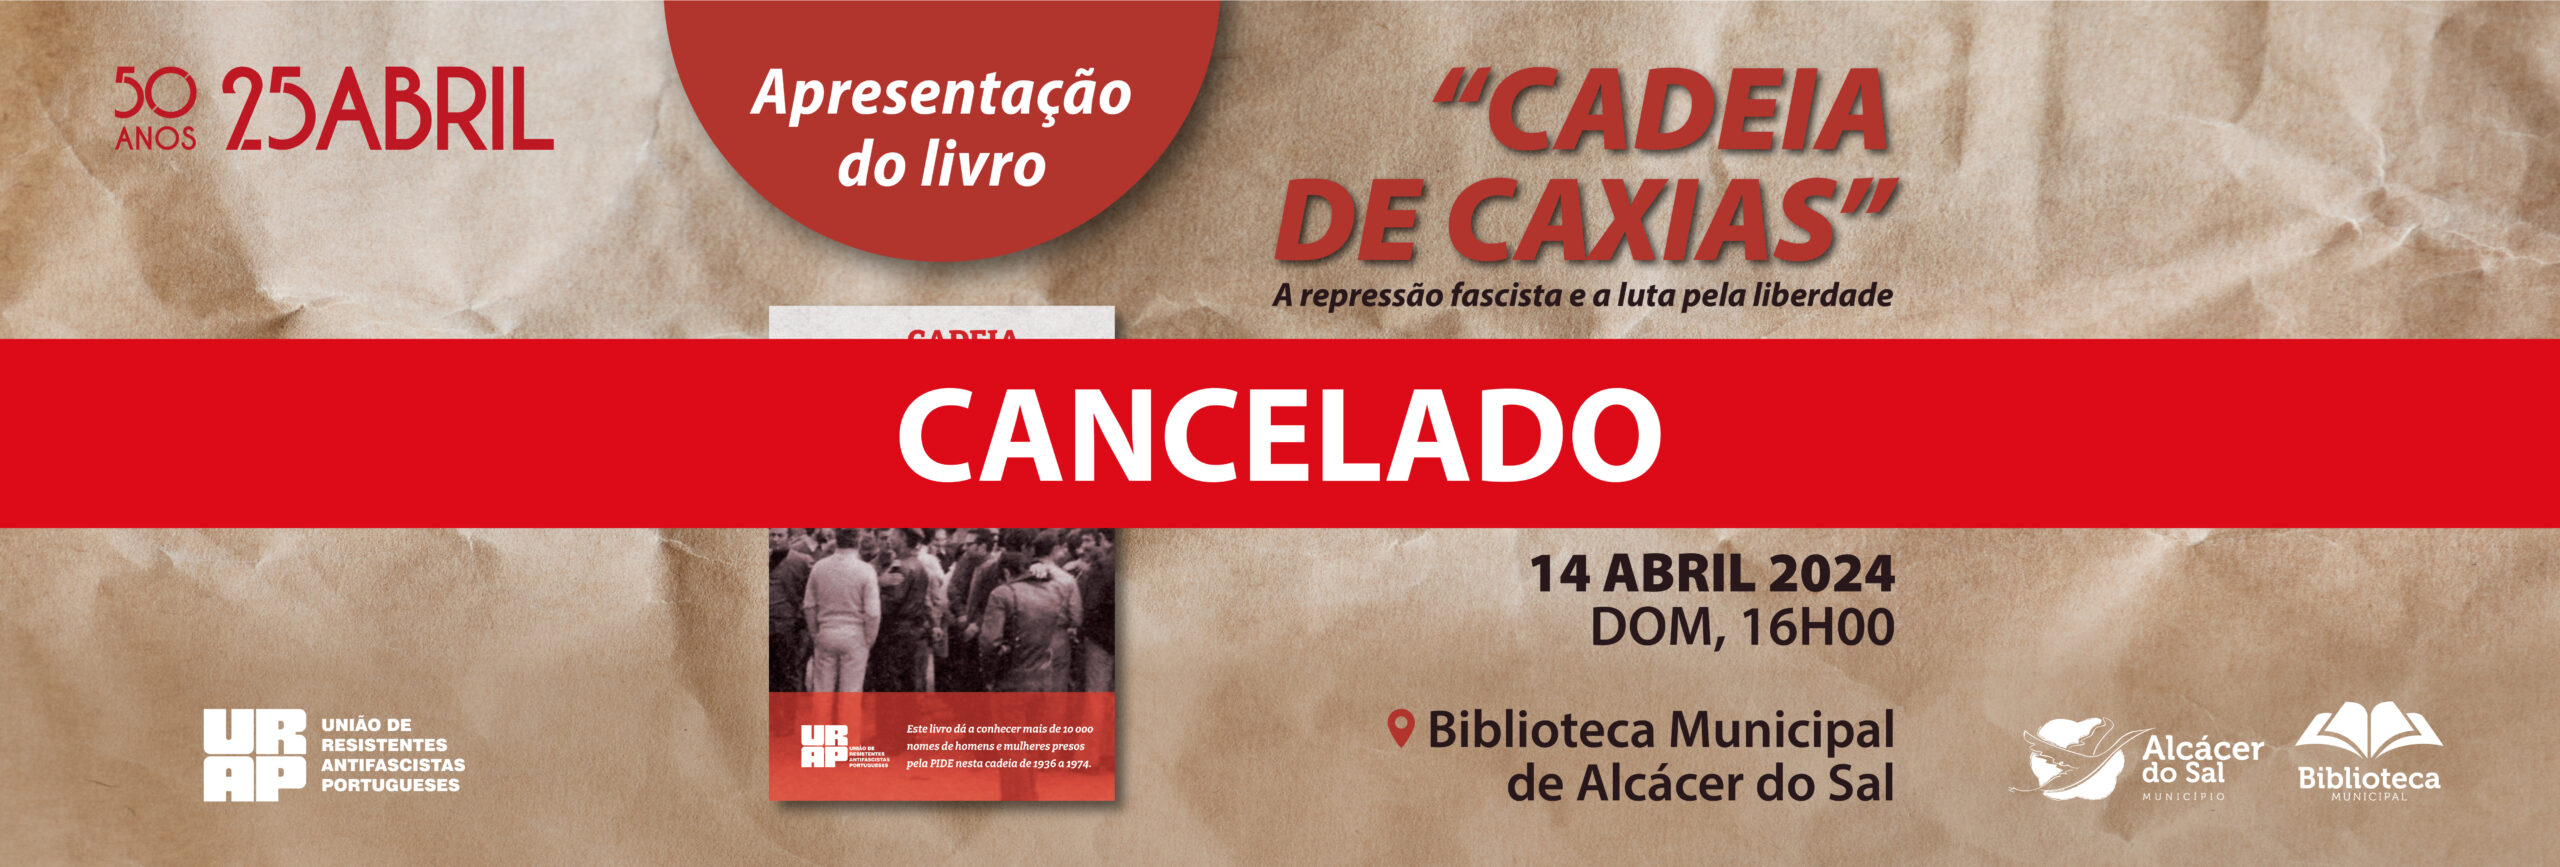 CANCELADO Imagem site_apresentação livro - Cadeias de Caxias